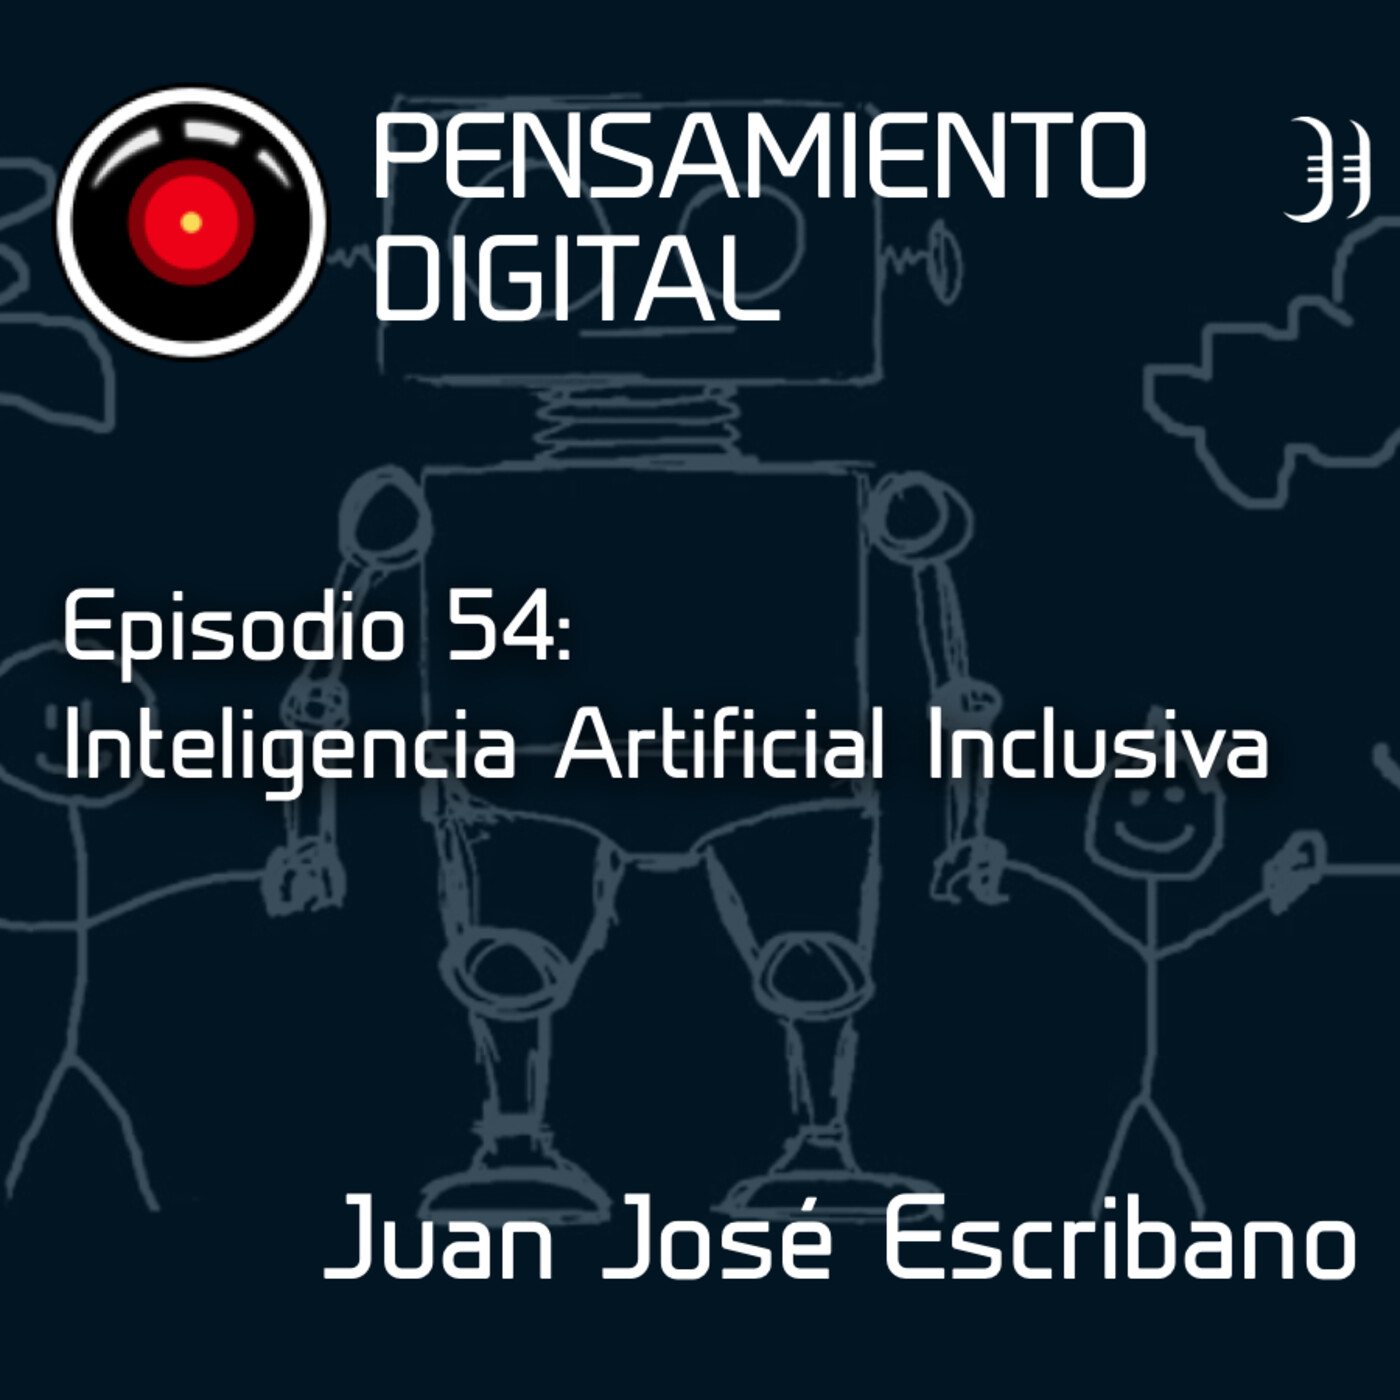 Episodio 54: Inteligencia Artificial Inclusiva, con Juan José Escribano, de OdiseIA